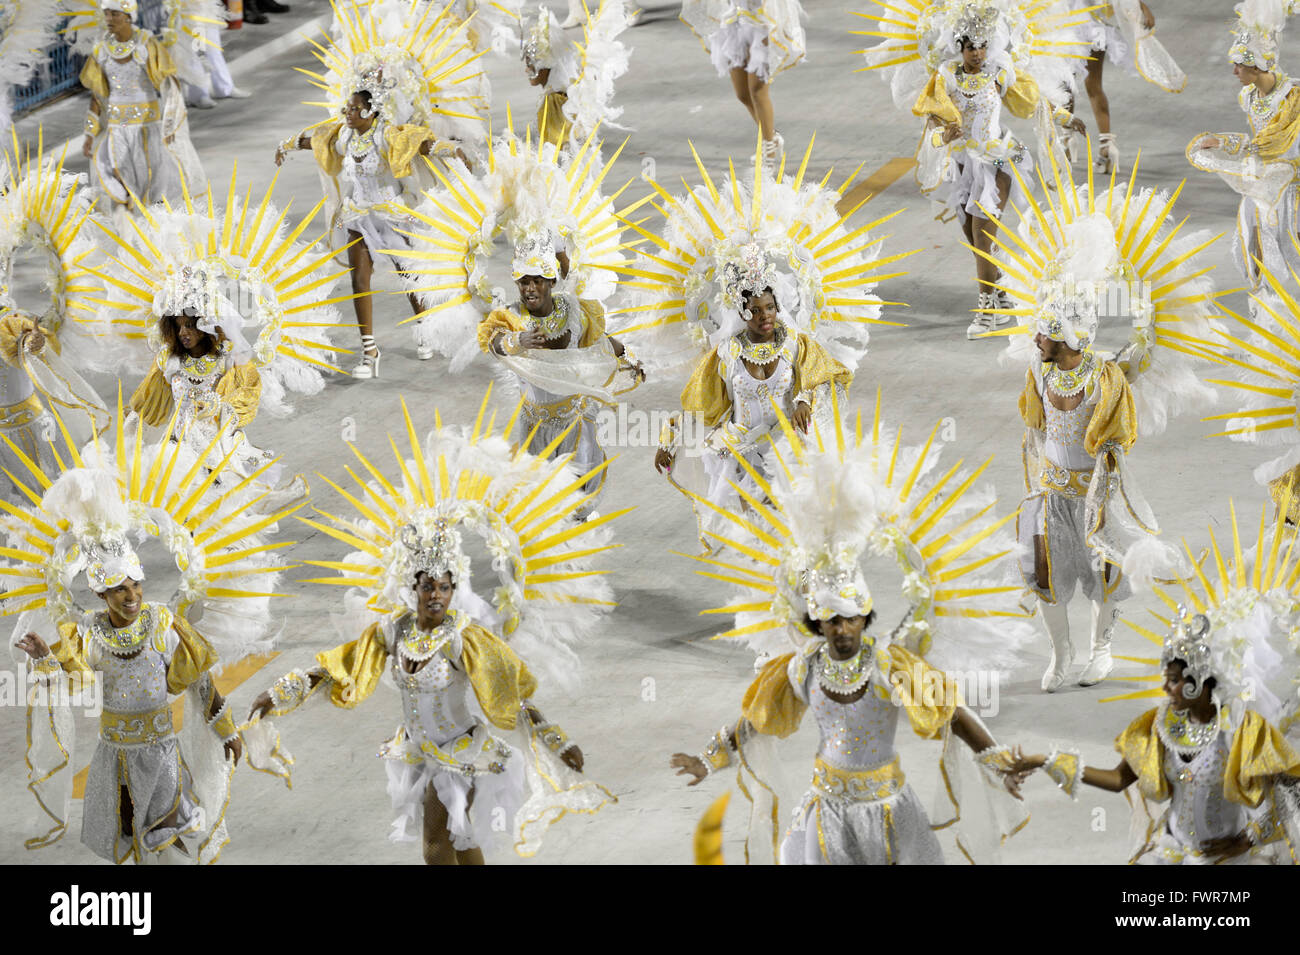 N° dancersm Samba, défilé de l'école de samba Estacio de Sá, carnaval 2016 dans le Sambadrome, Rio de Janeiro, Brésil Banque D'Images